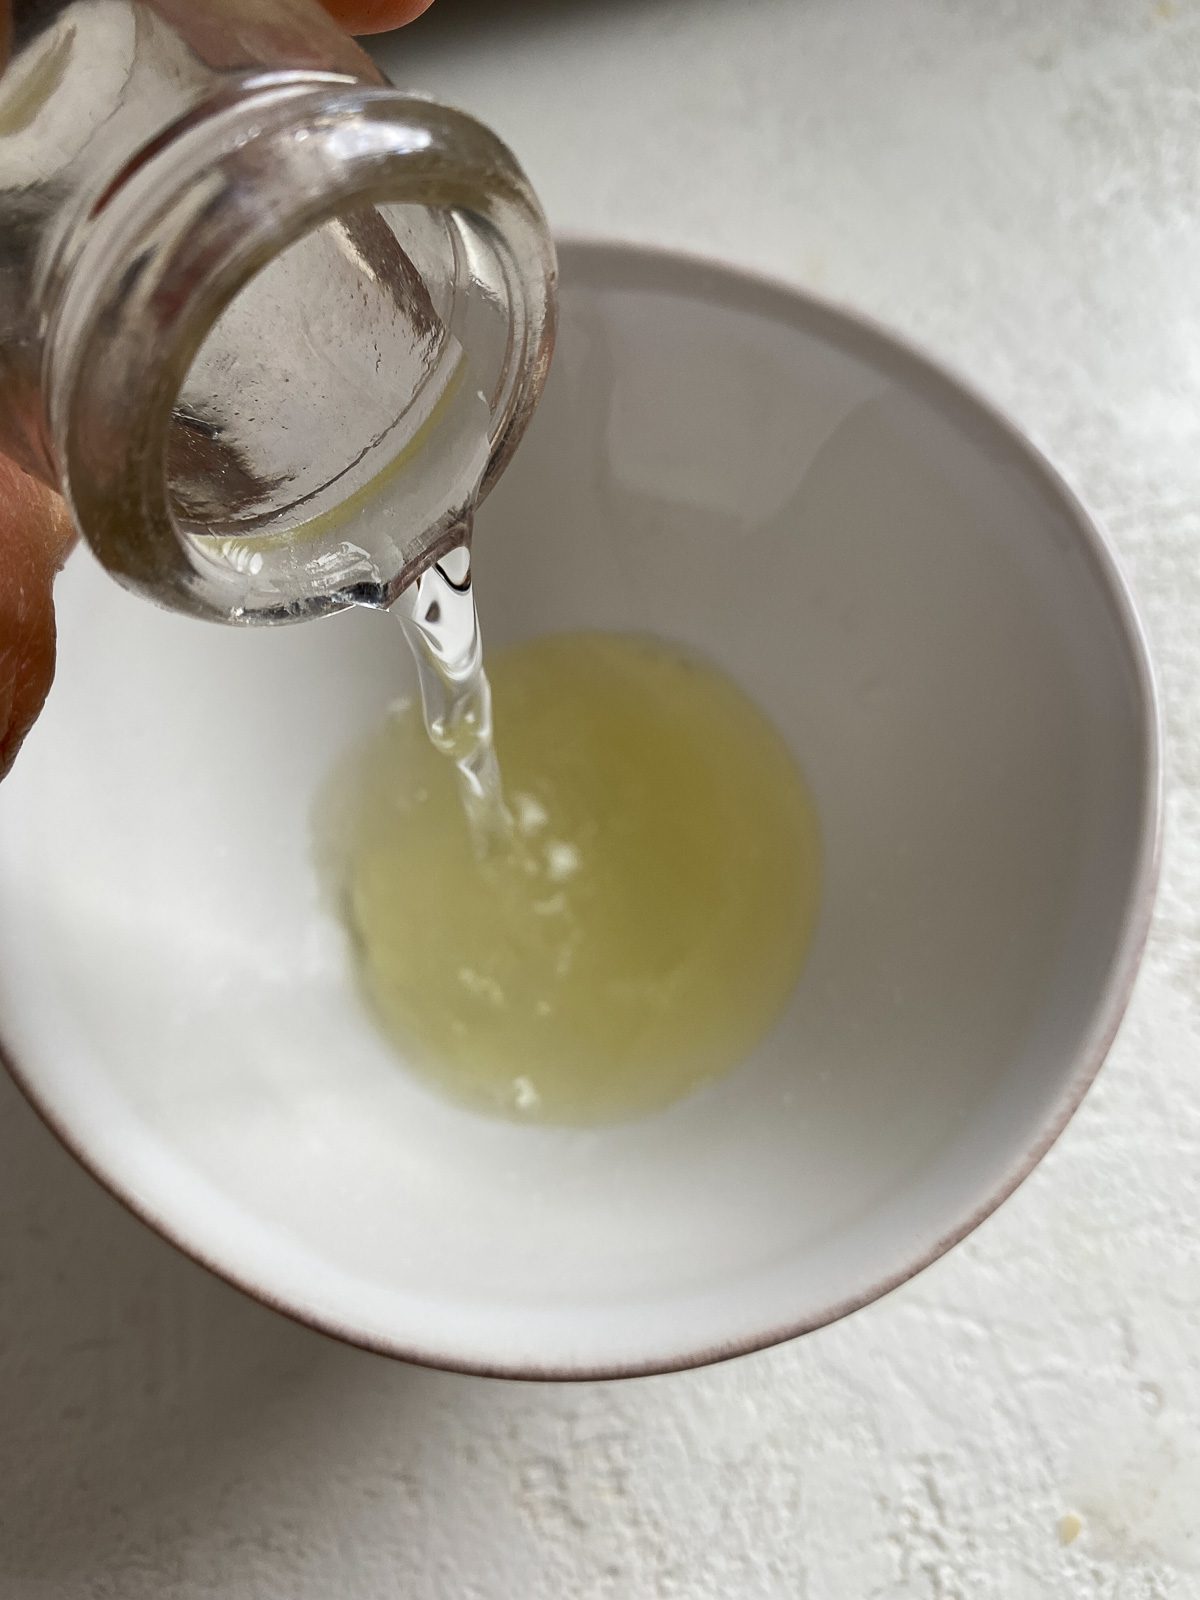 process shot of adding water to lemon juice in white bowl